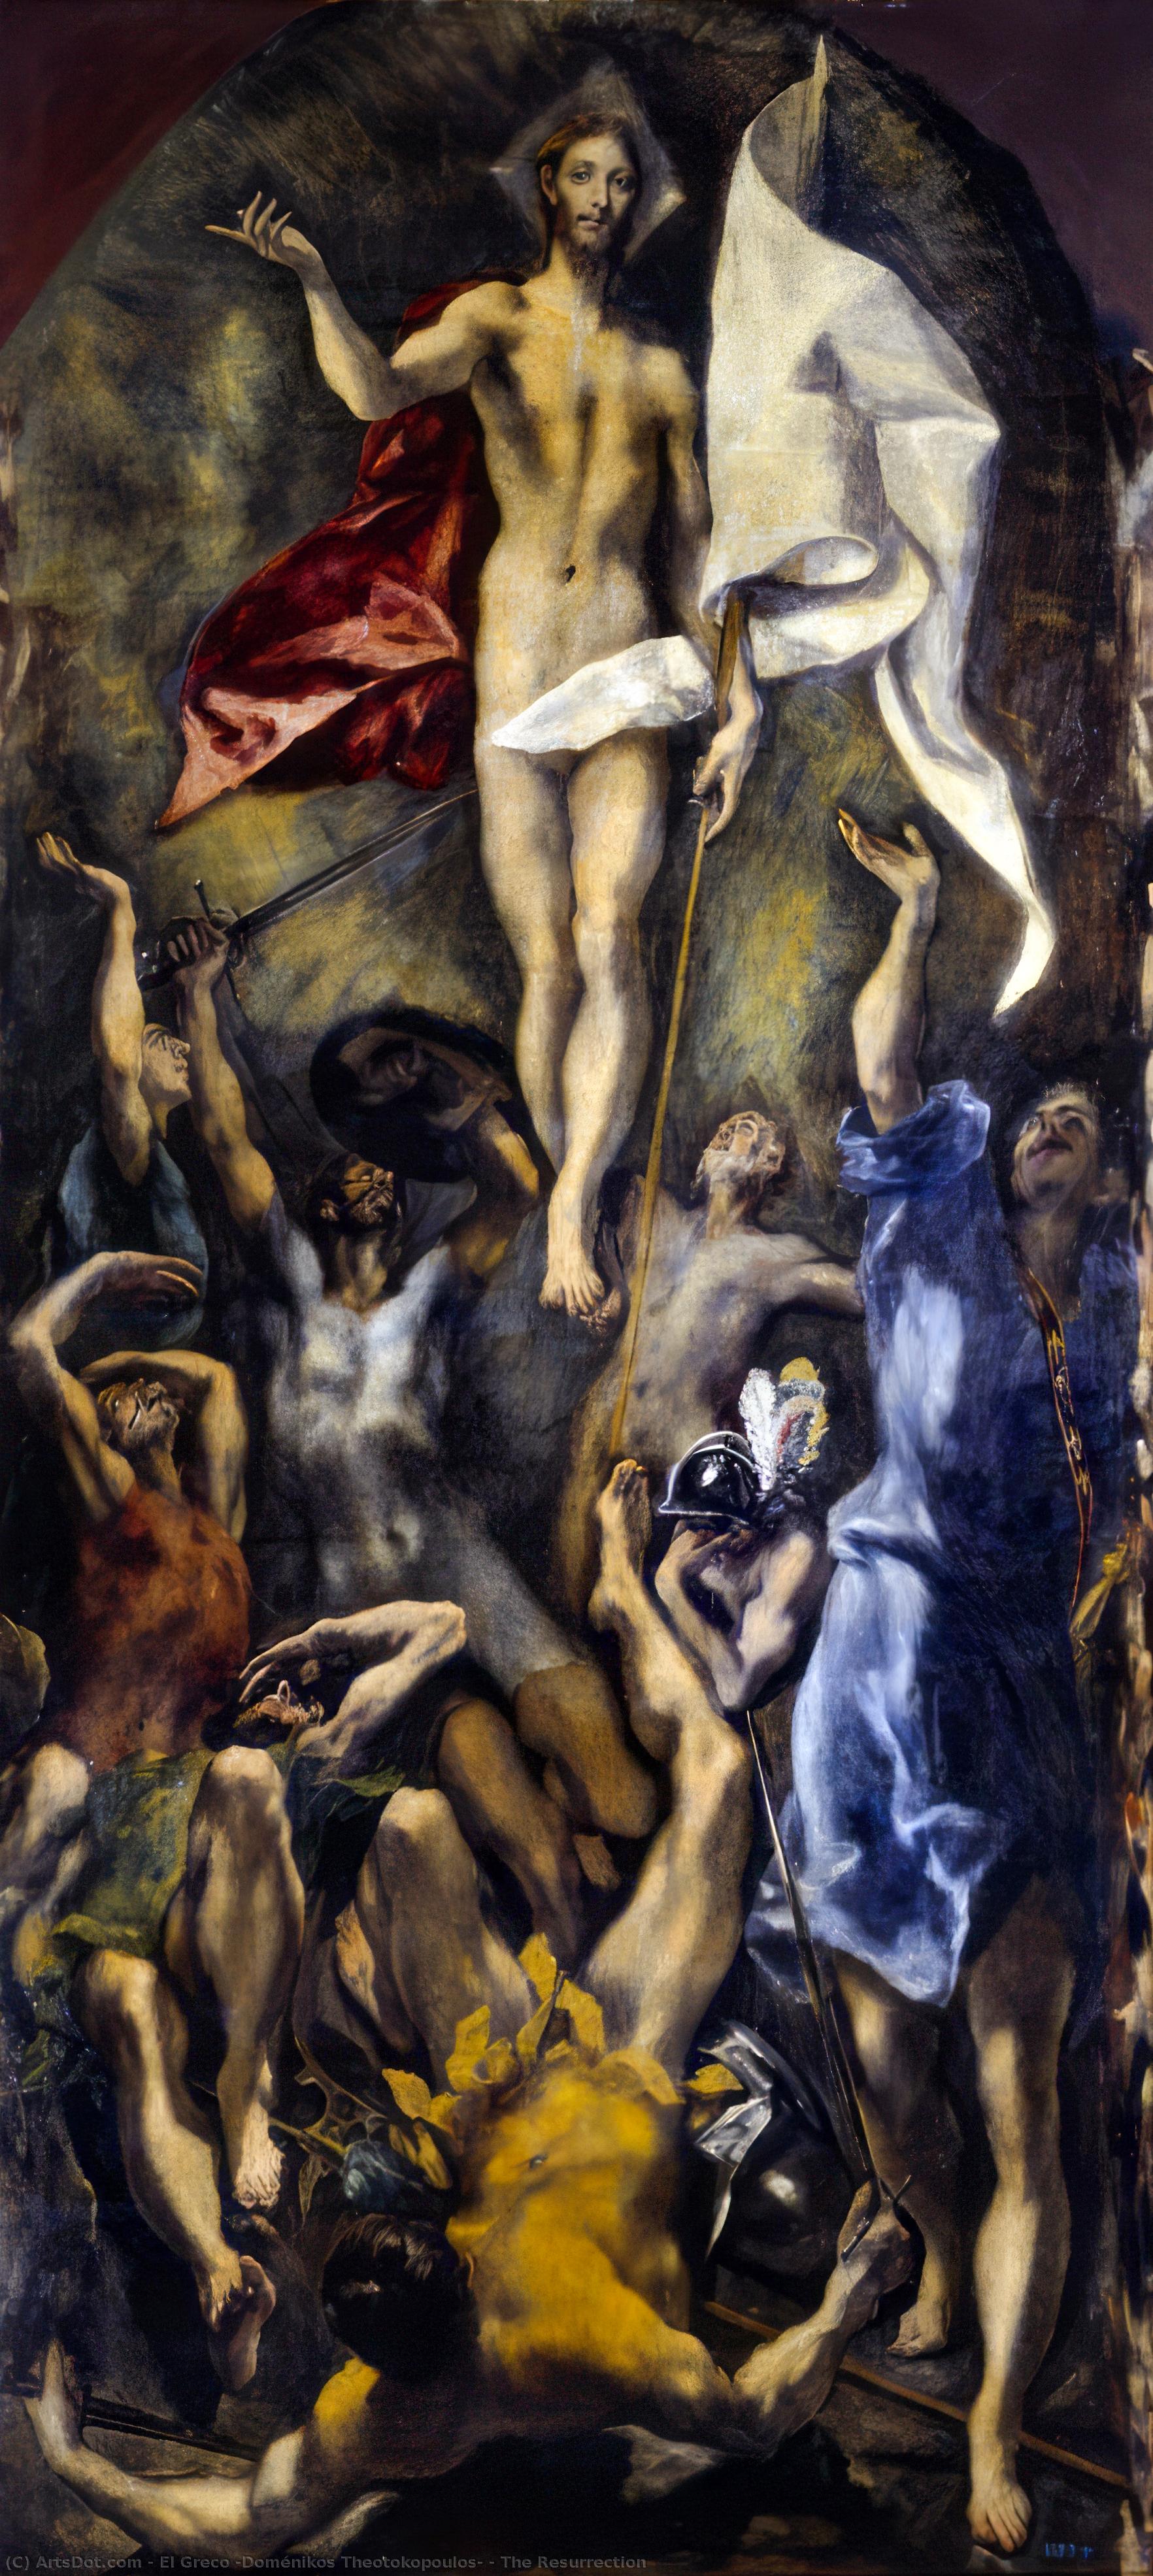 WikiOO.org - Enciclopédia das Belas Artes - Pintura, Arte por El Greco (Doménikos Theotokopoulos) - The Resurrection